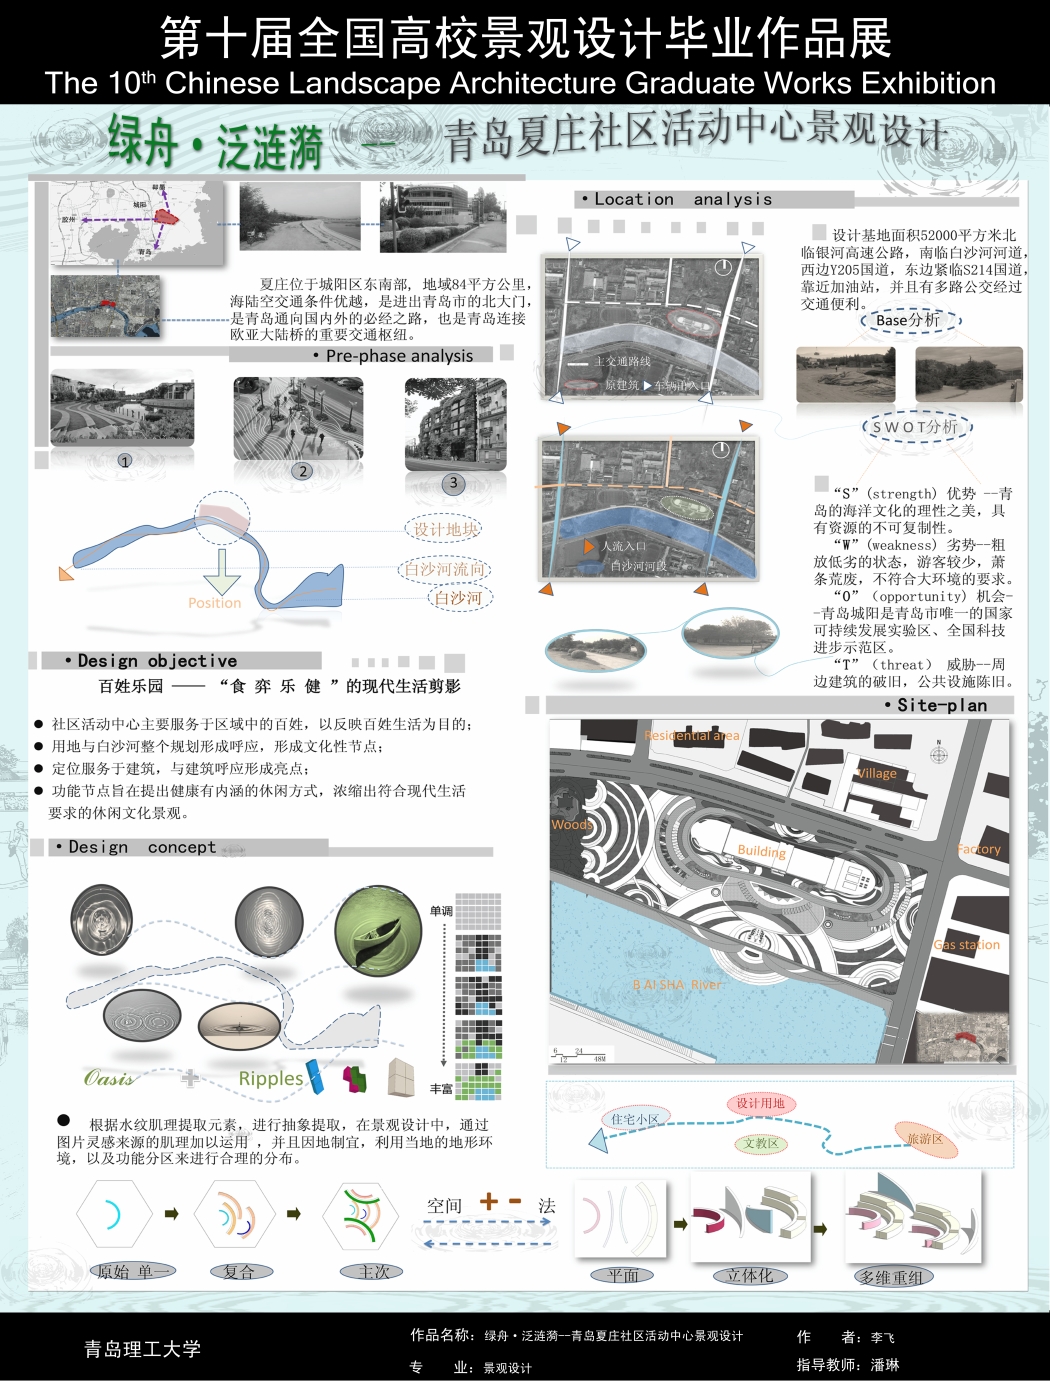 绿舟泛涟漪--青岛夏庄社区活动中心景观设计-1